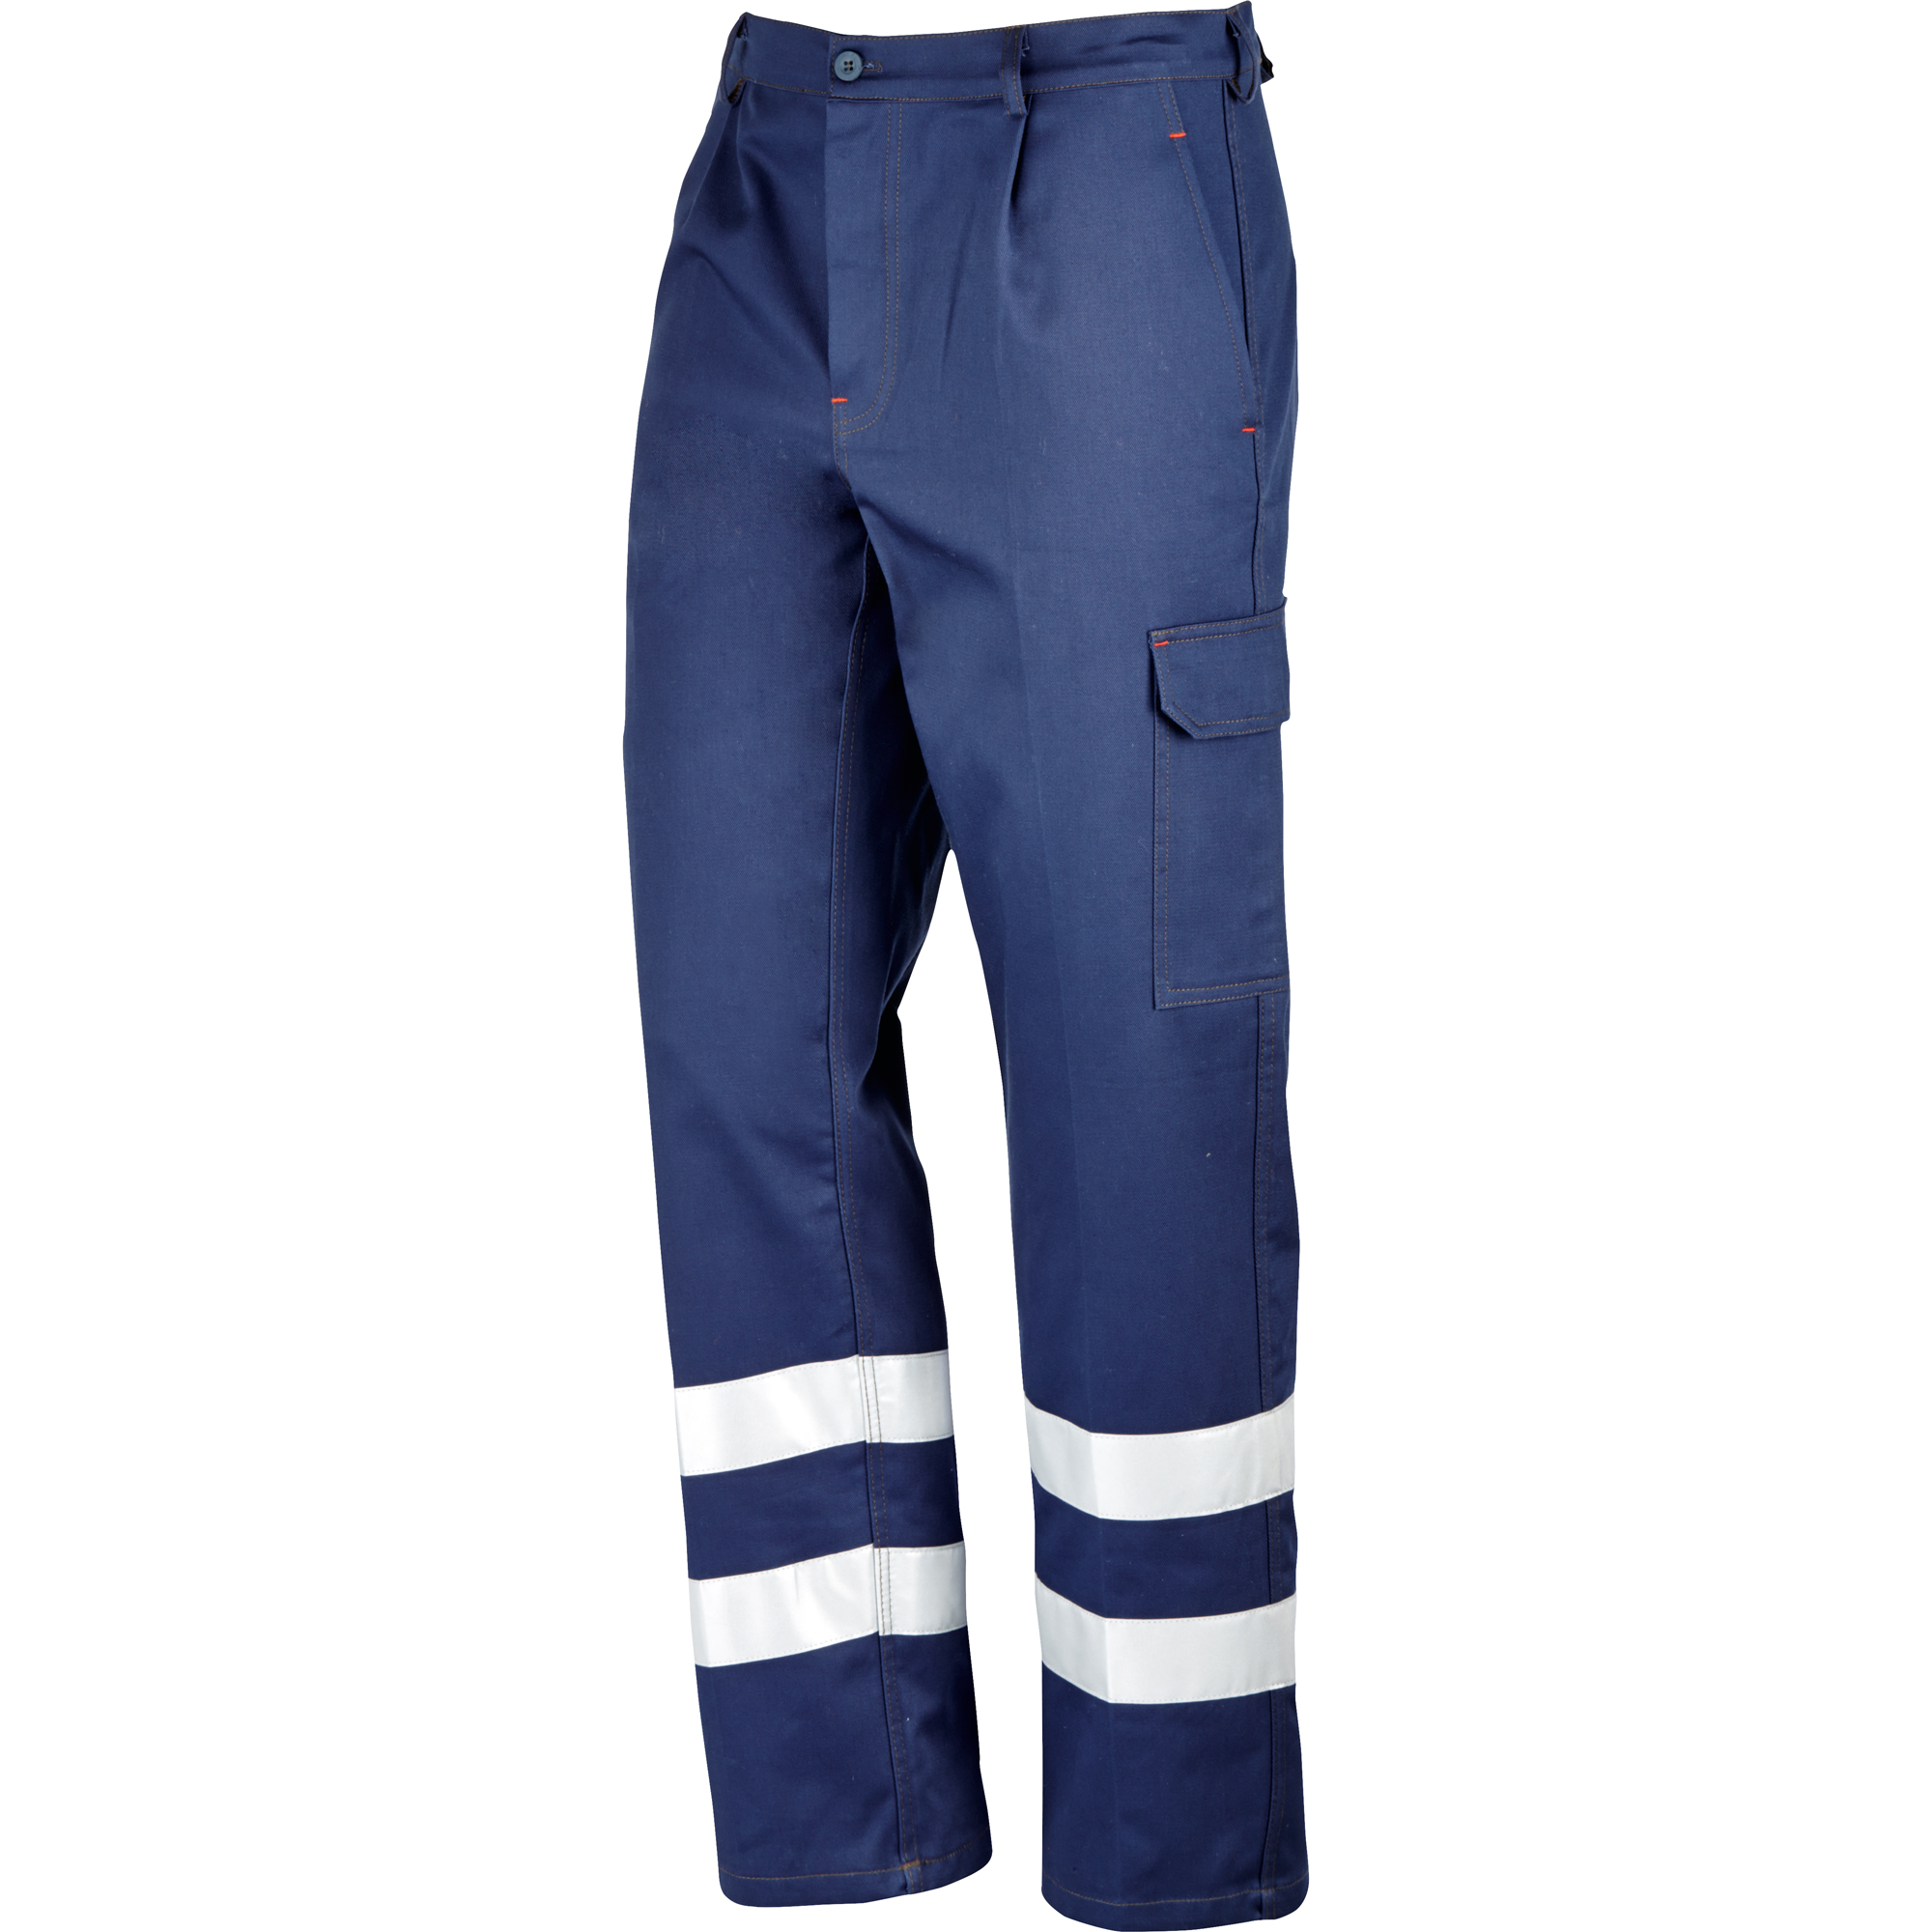 Pantaloni Neri Spa 435230 Super Blu, sicurezza sul lavoro